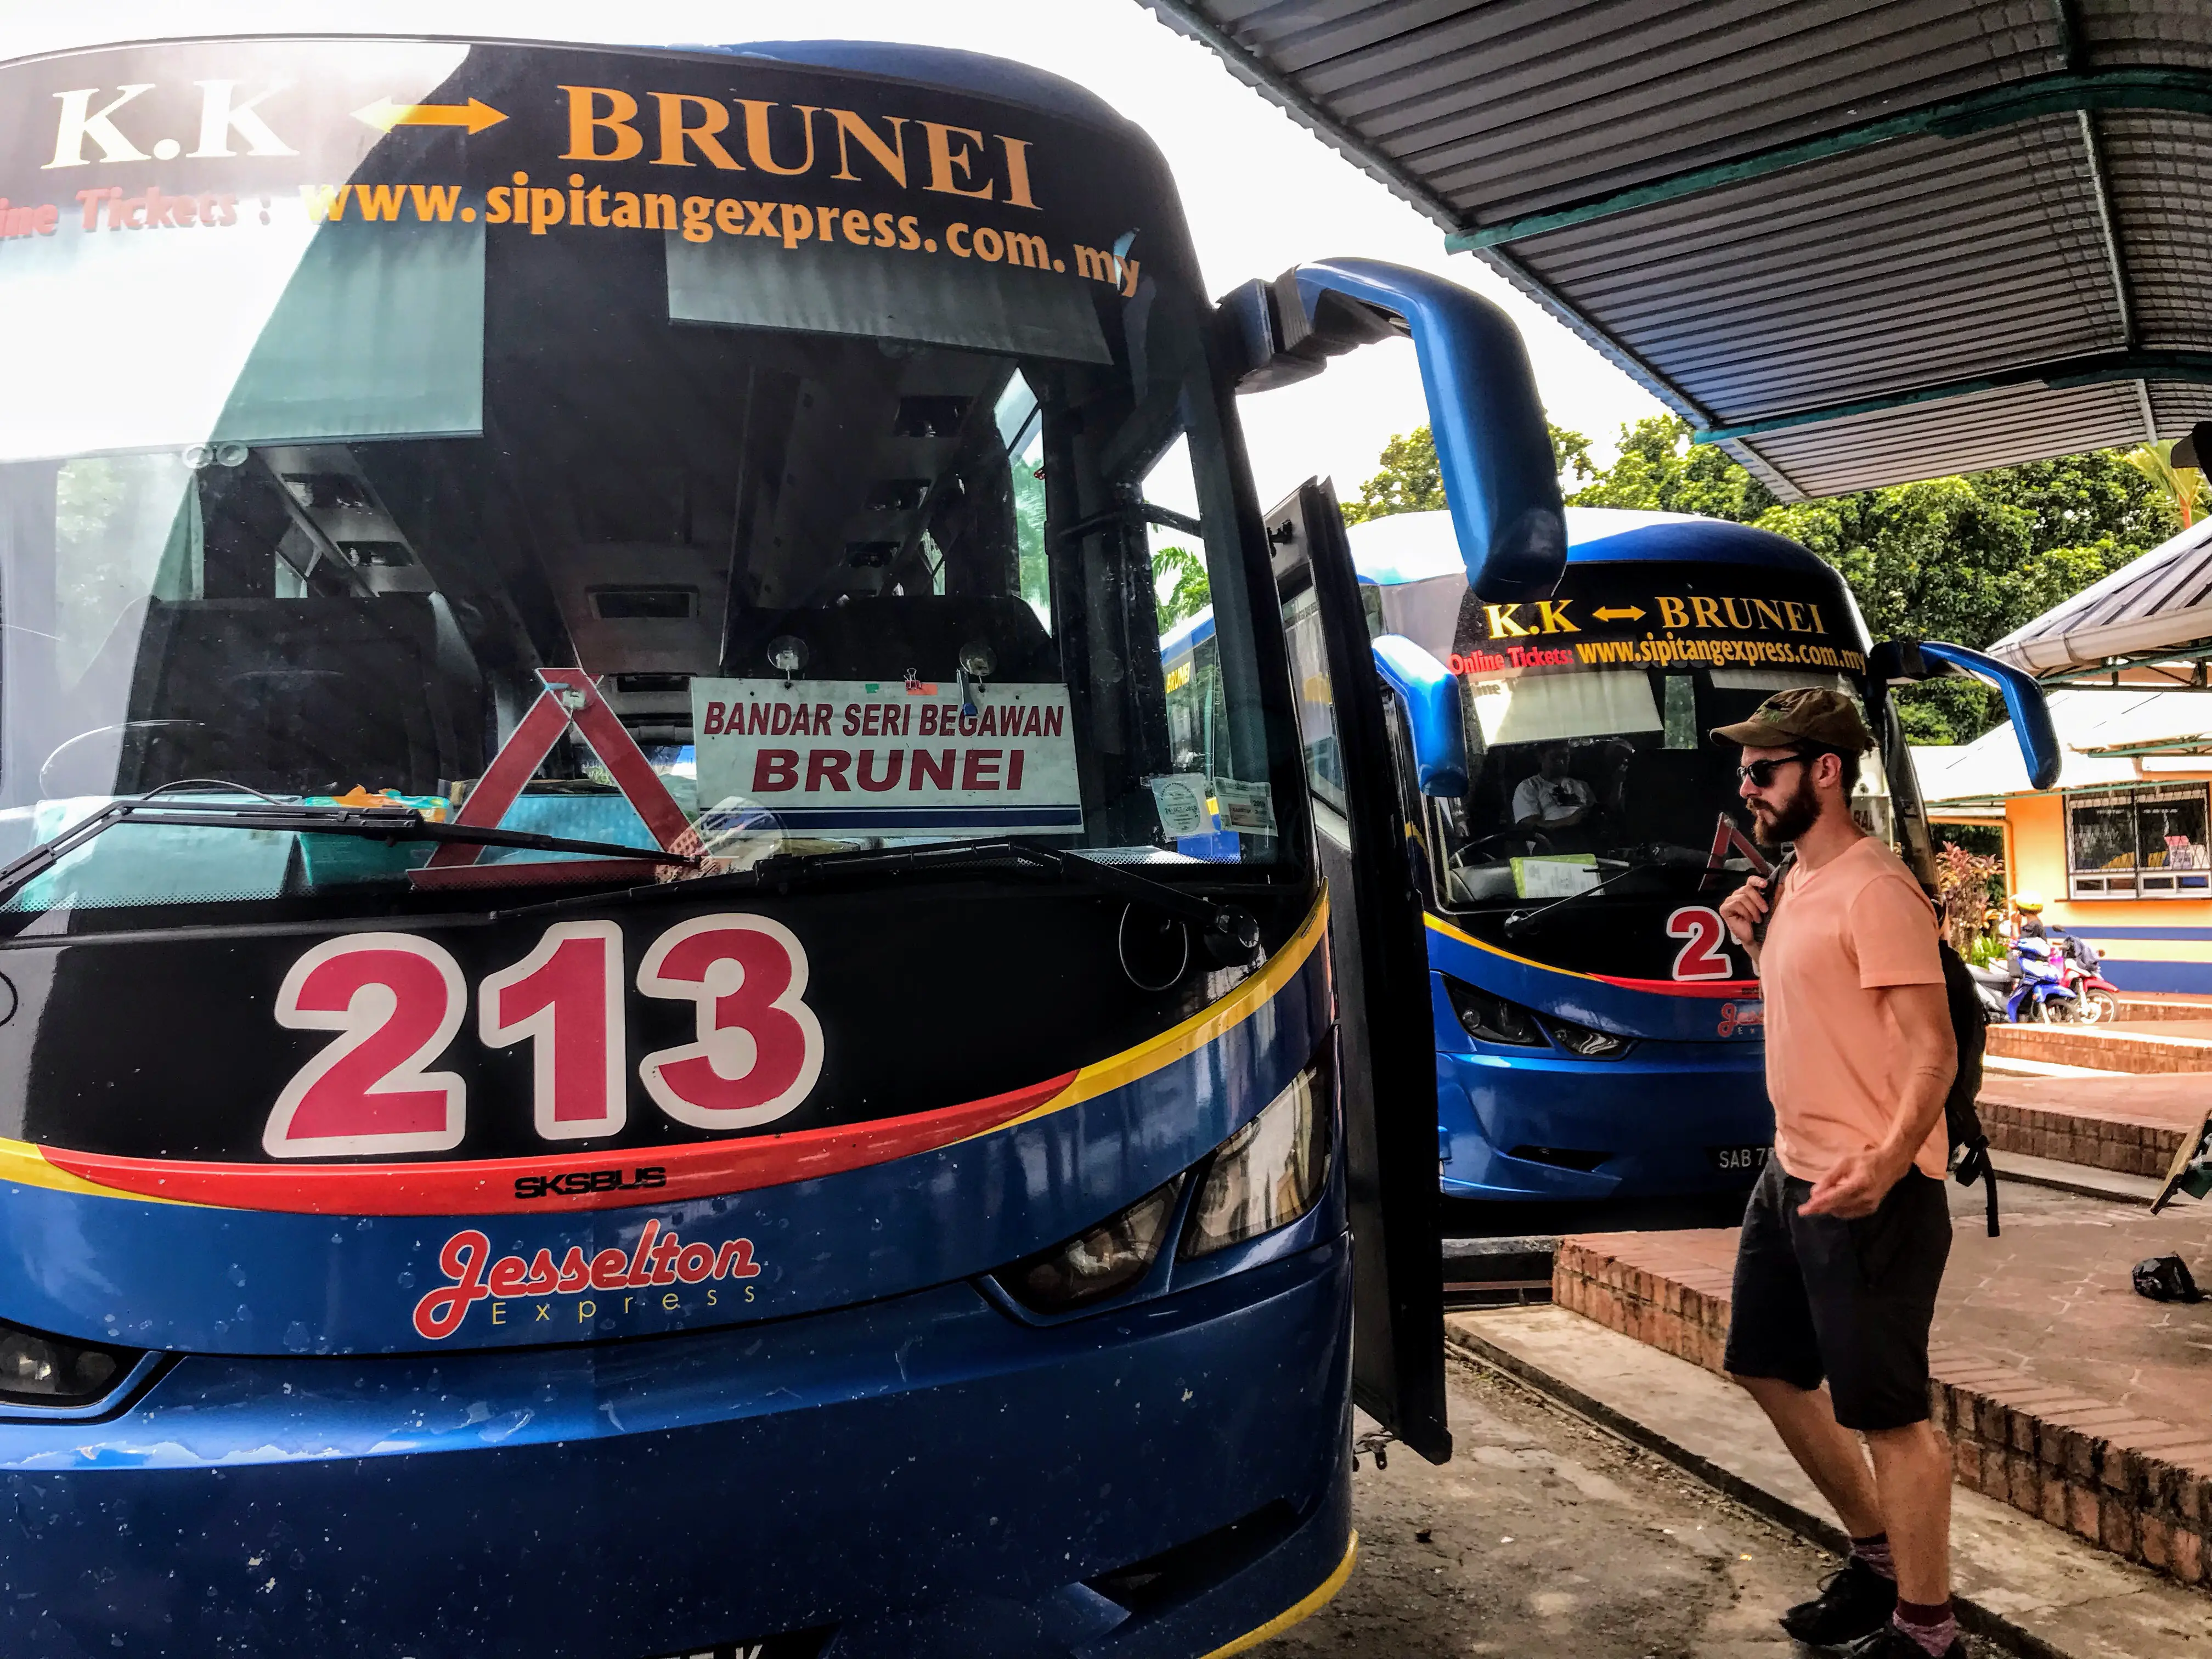 Sipitang bus to Brunei, Borneo